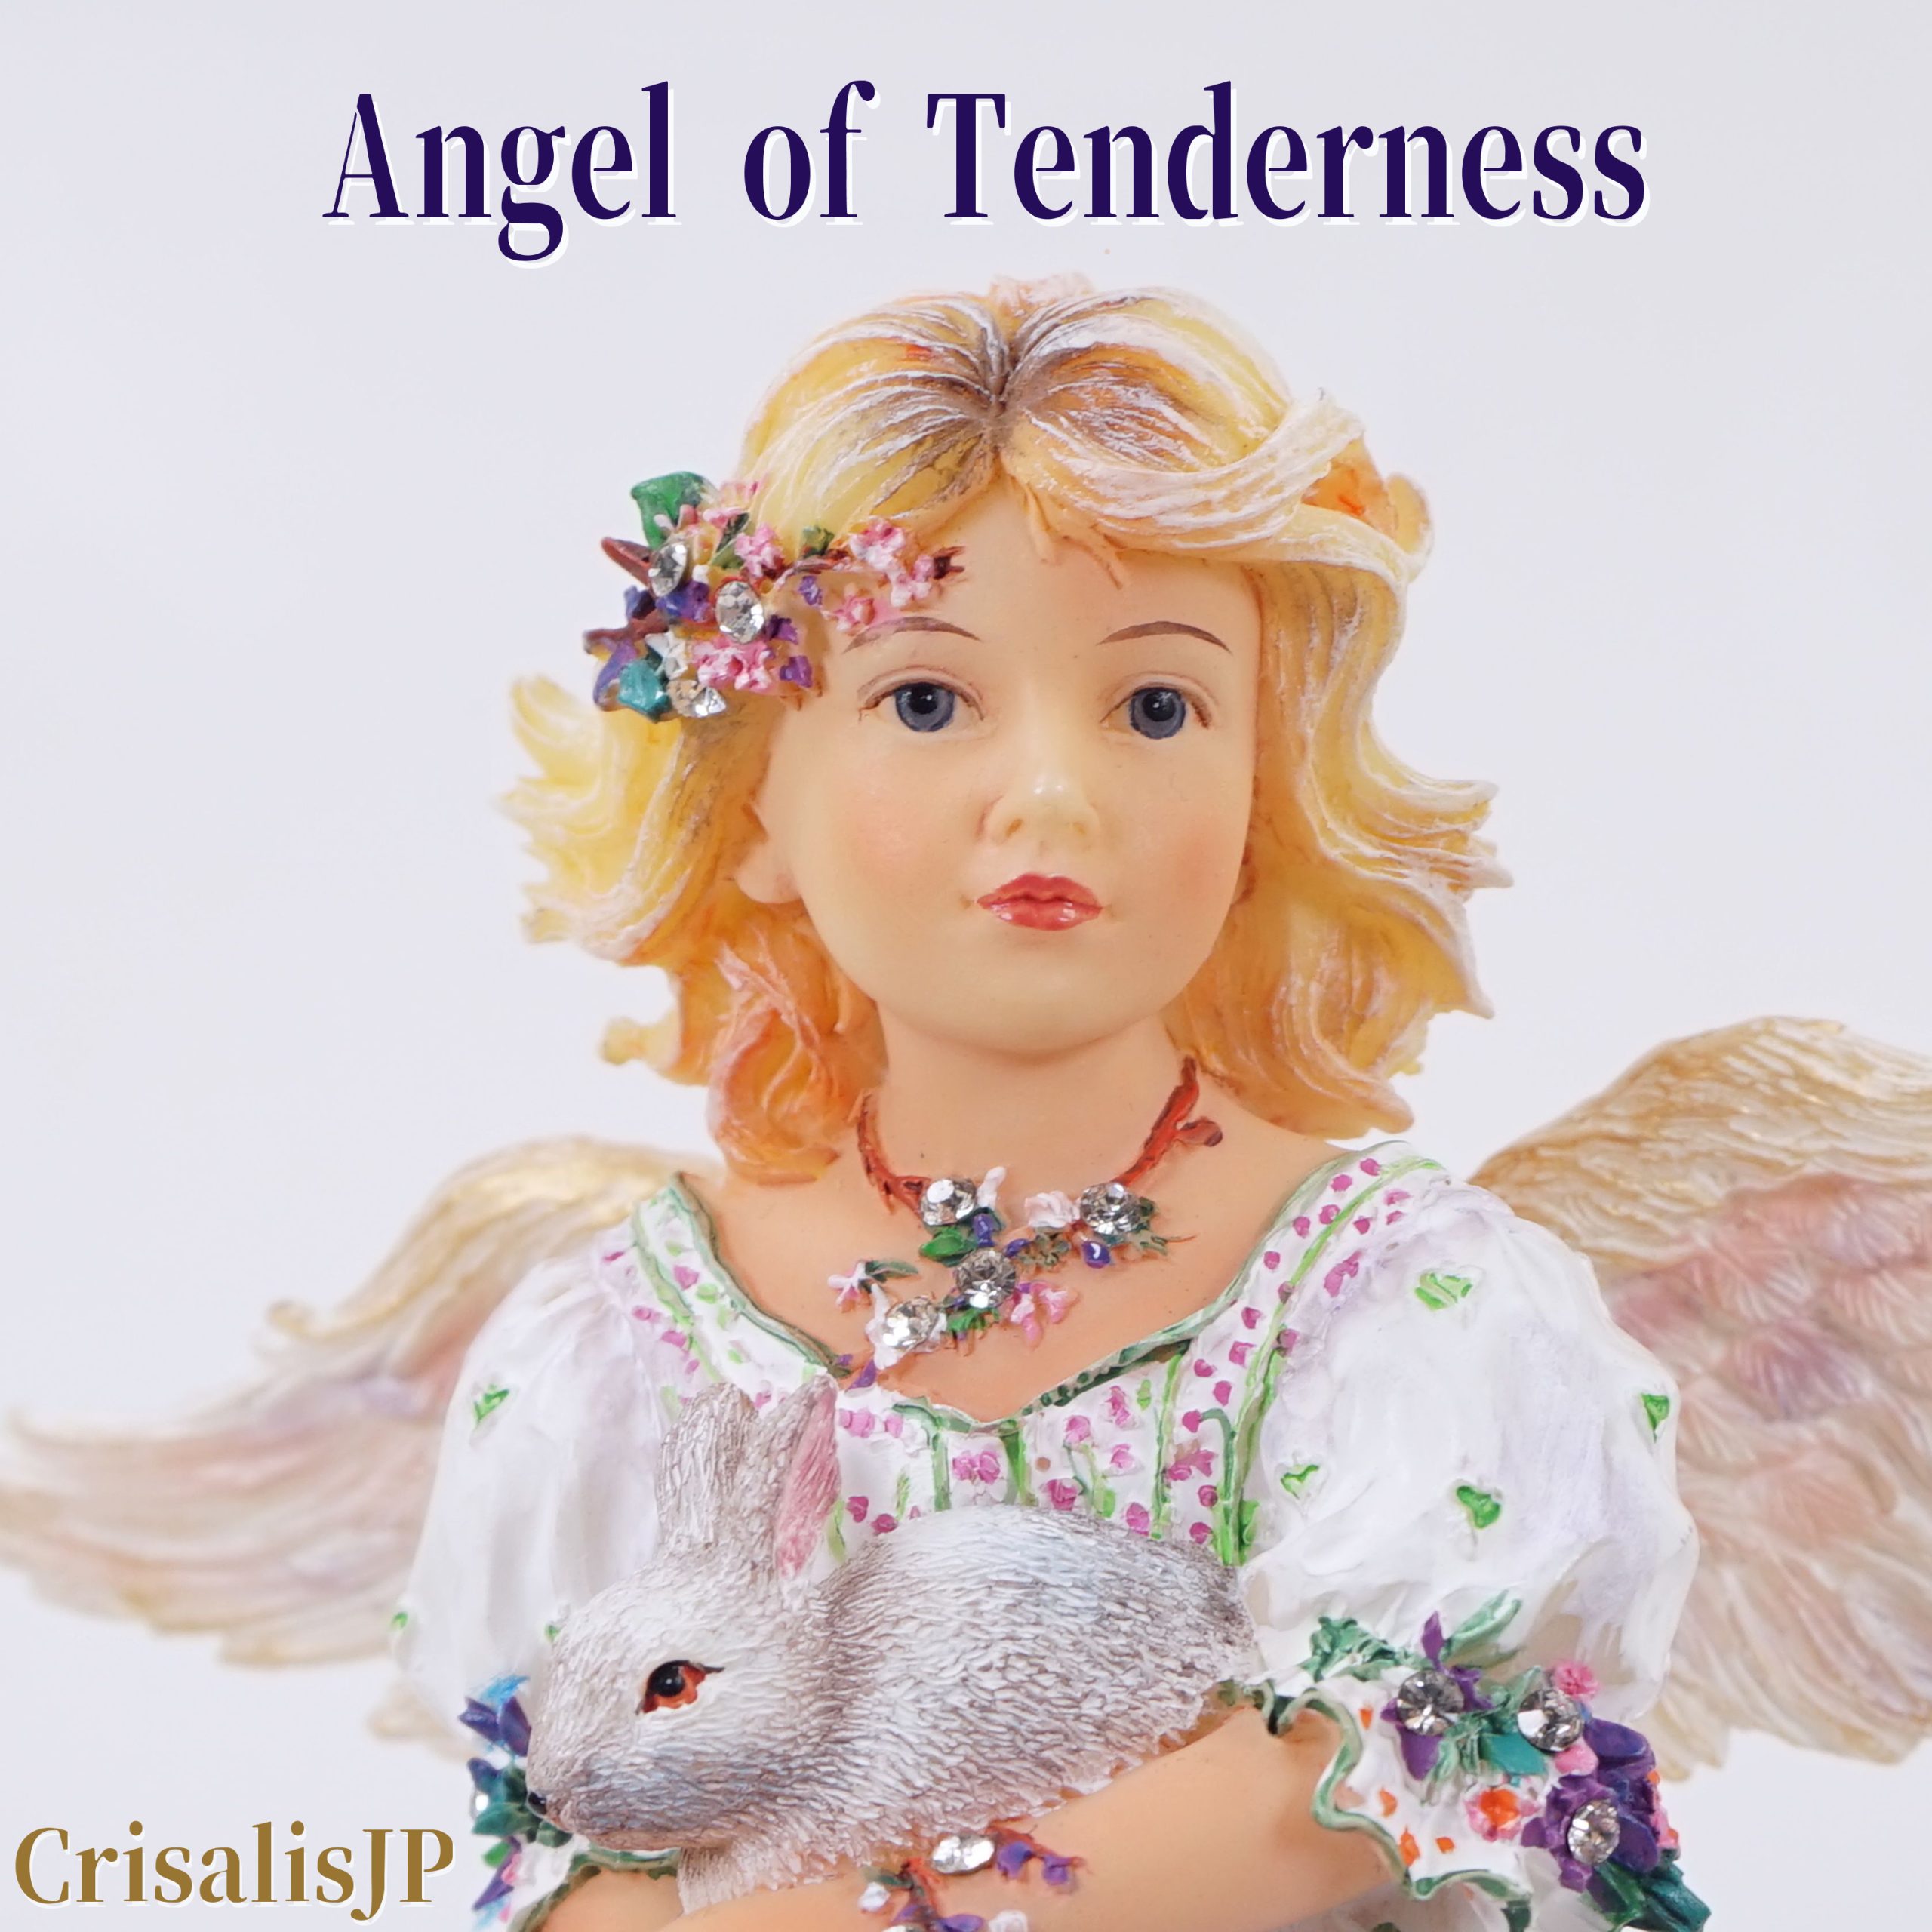 Angel of Tenderness